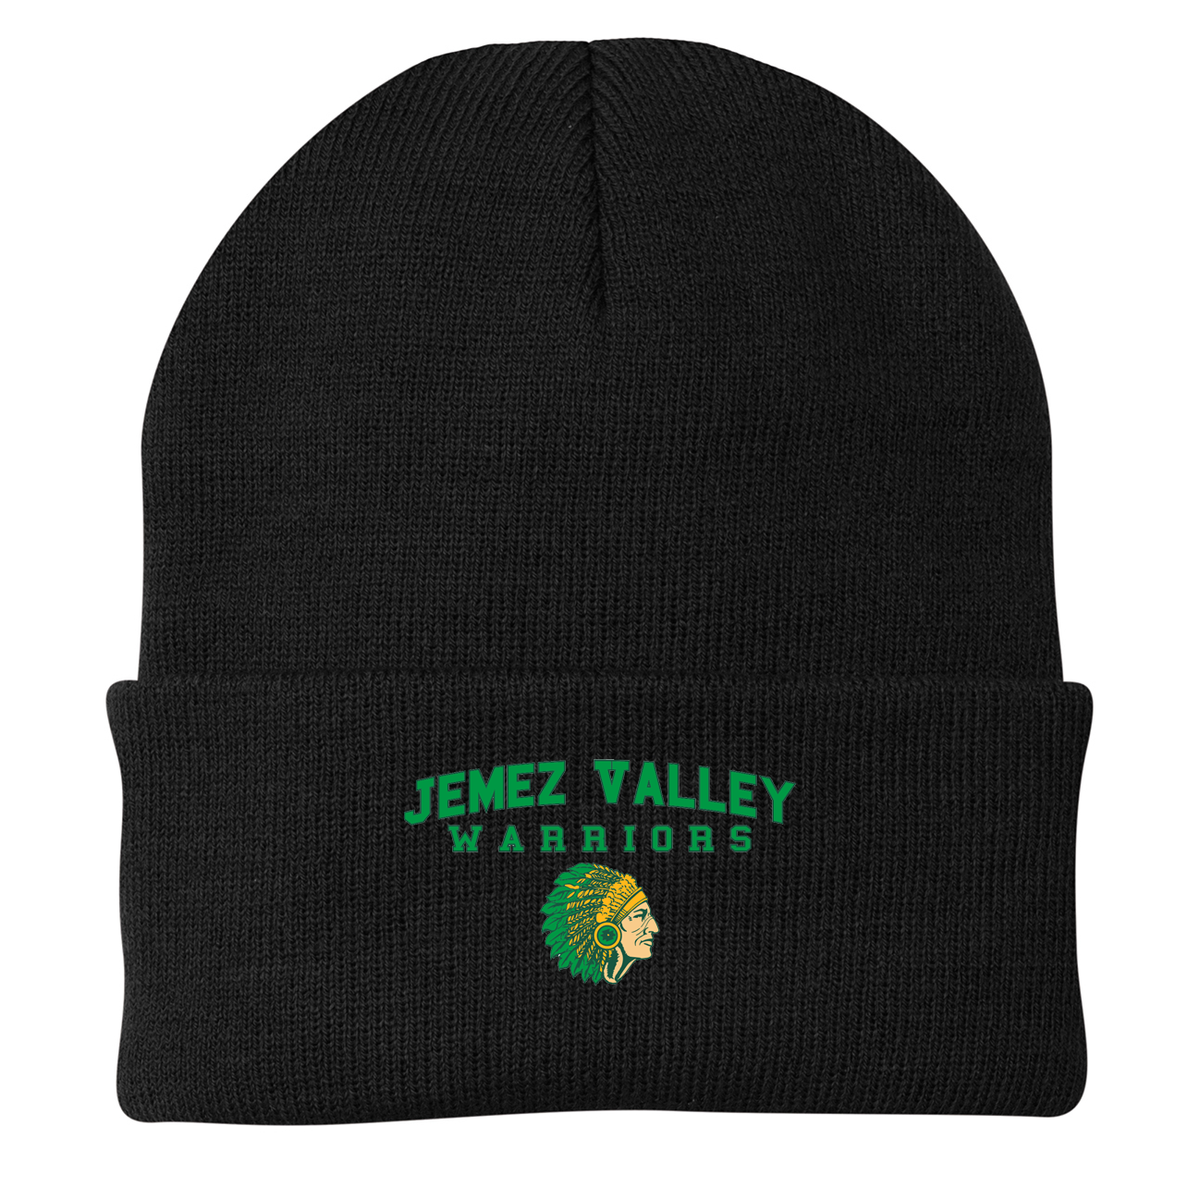 Jemez Valley Warriors Knit Beanie